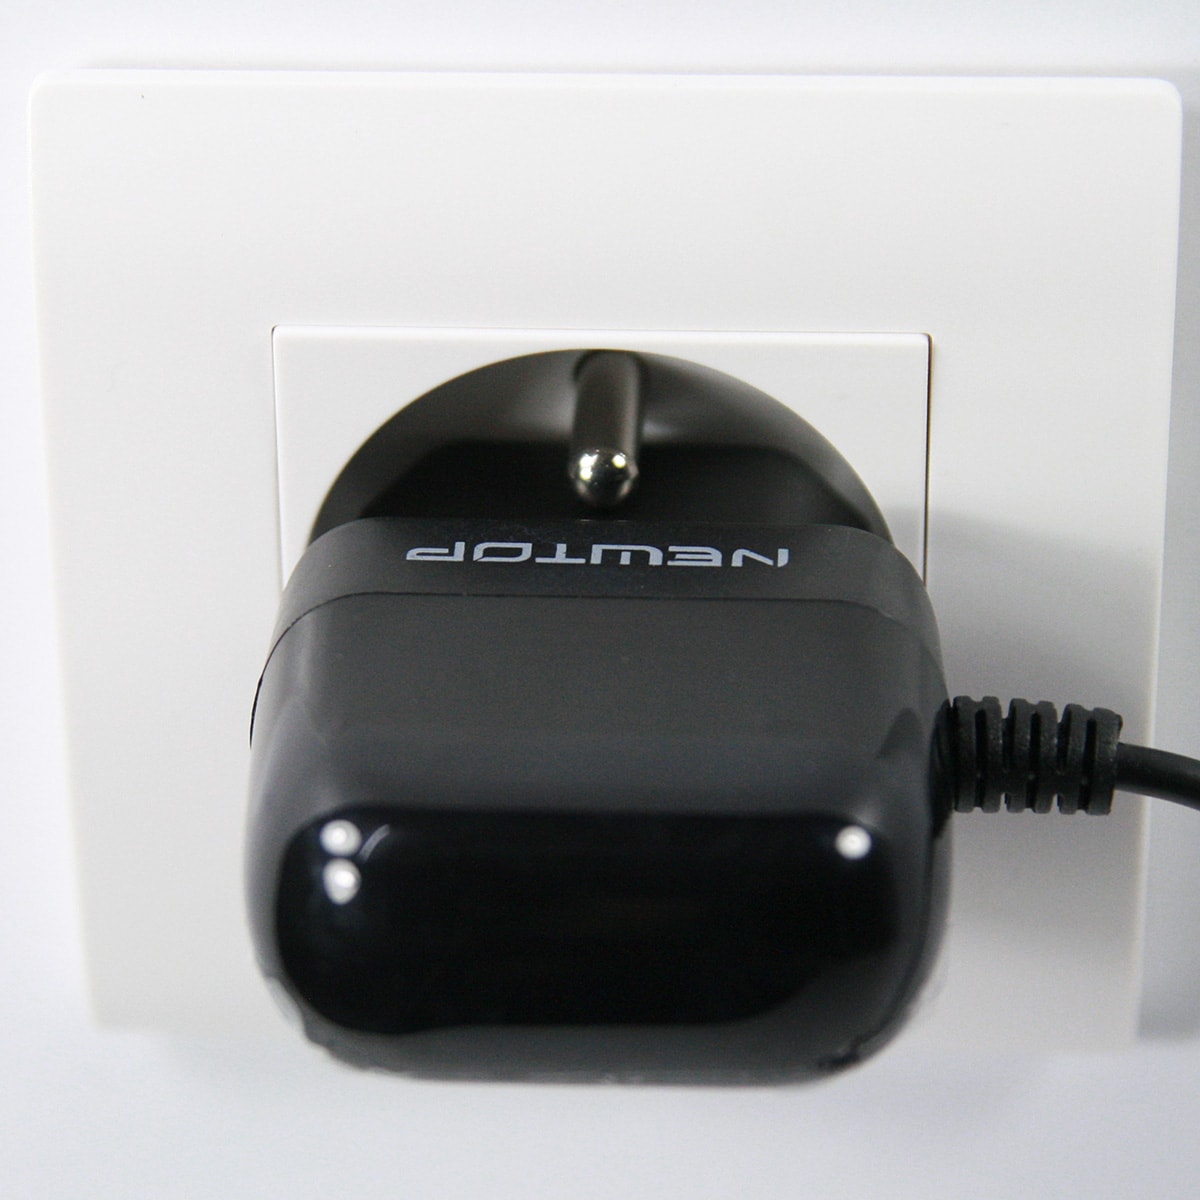 Chargeur micro USB secteur 220V output 5V 1.5A pour téléphone mobile, tablette